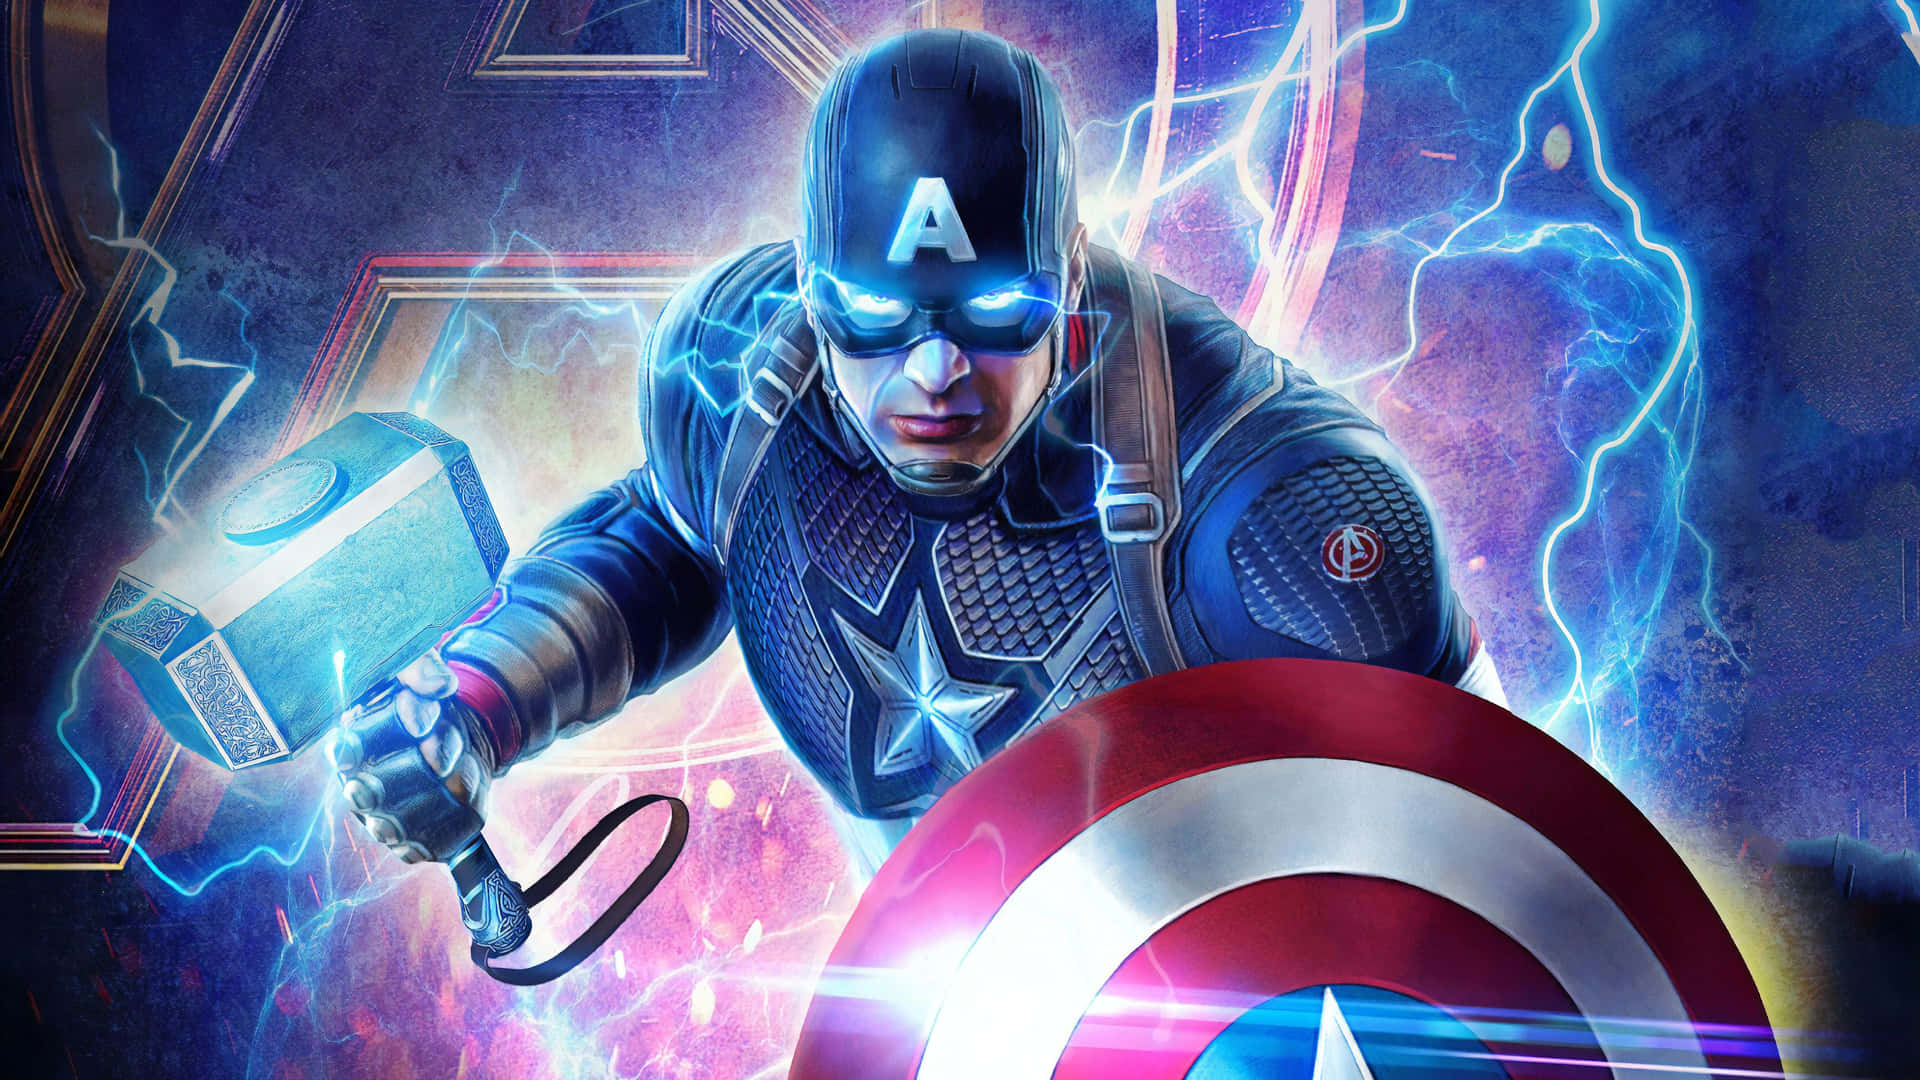 Retfærdighed for alle - Captain America bruger sit skjold til at redde verden i Endgame. Wallpaper